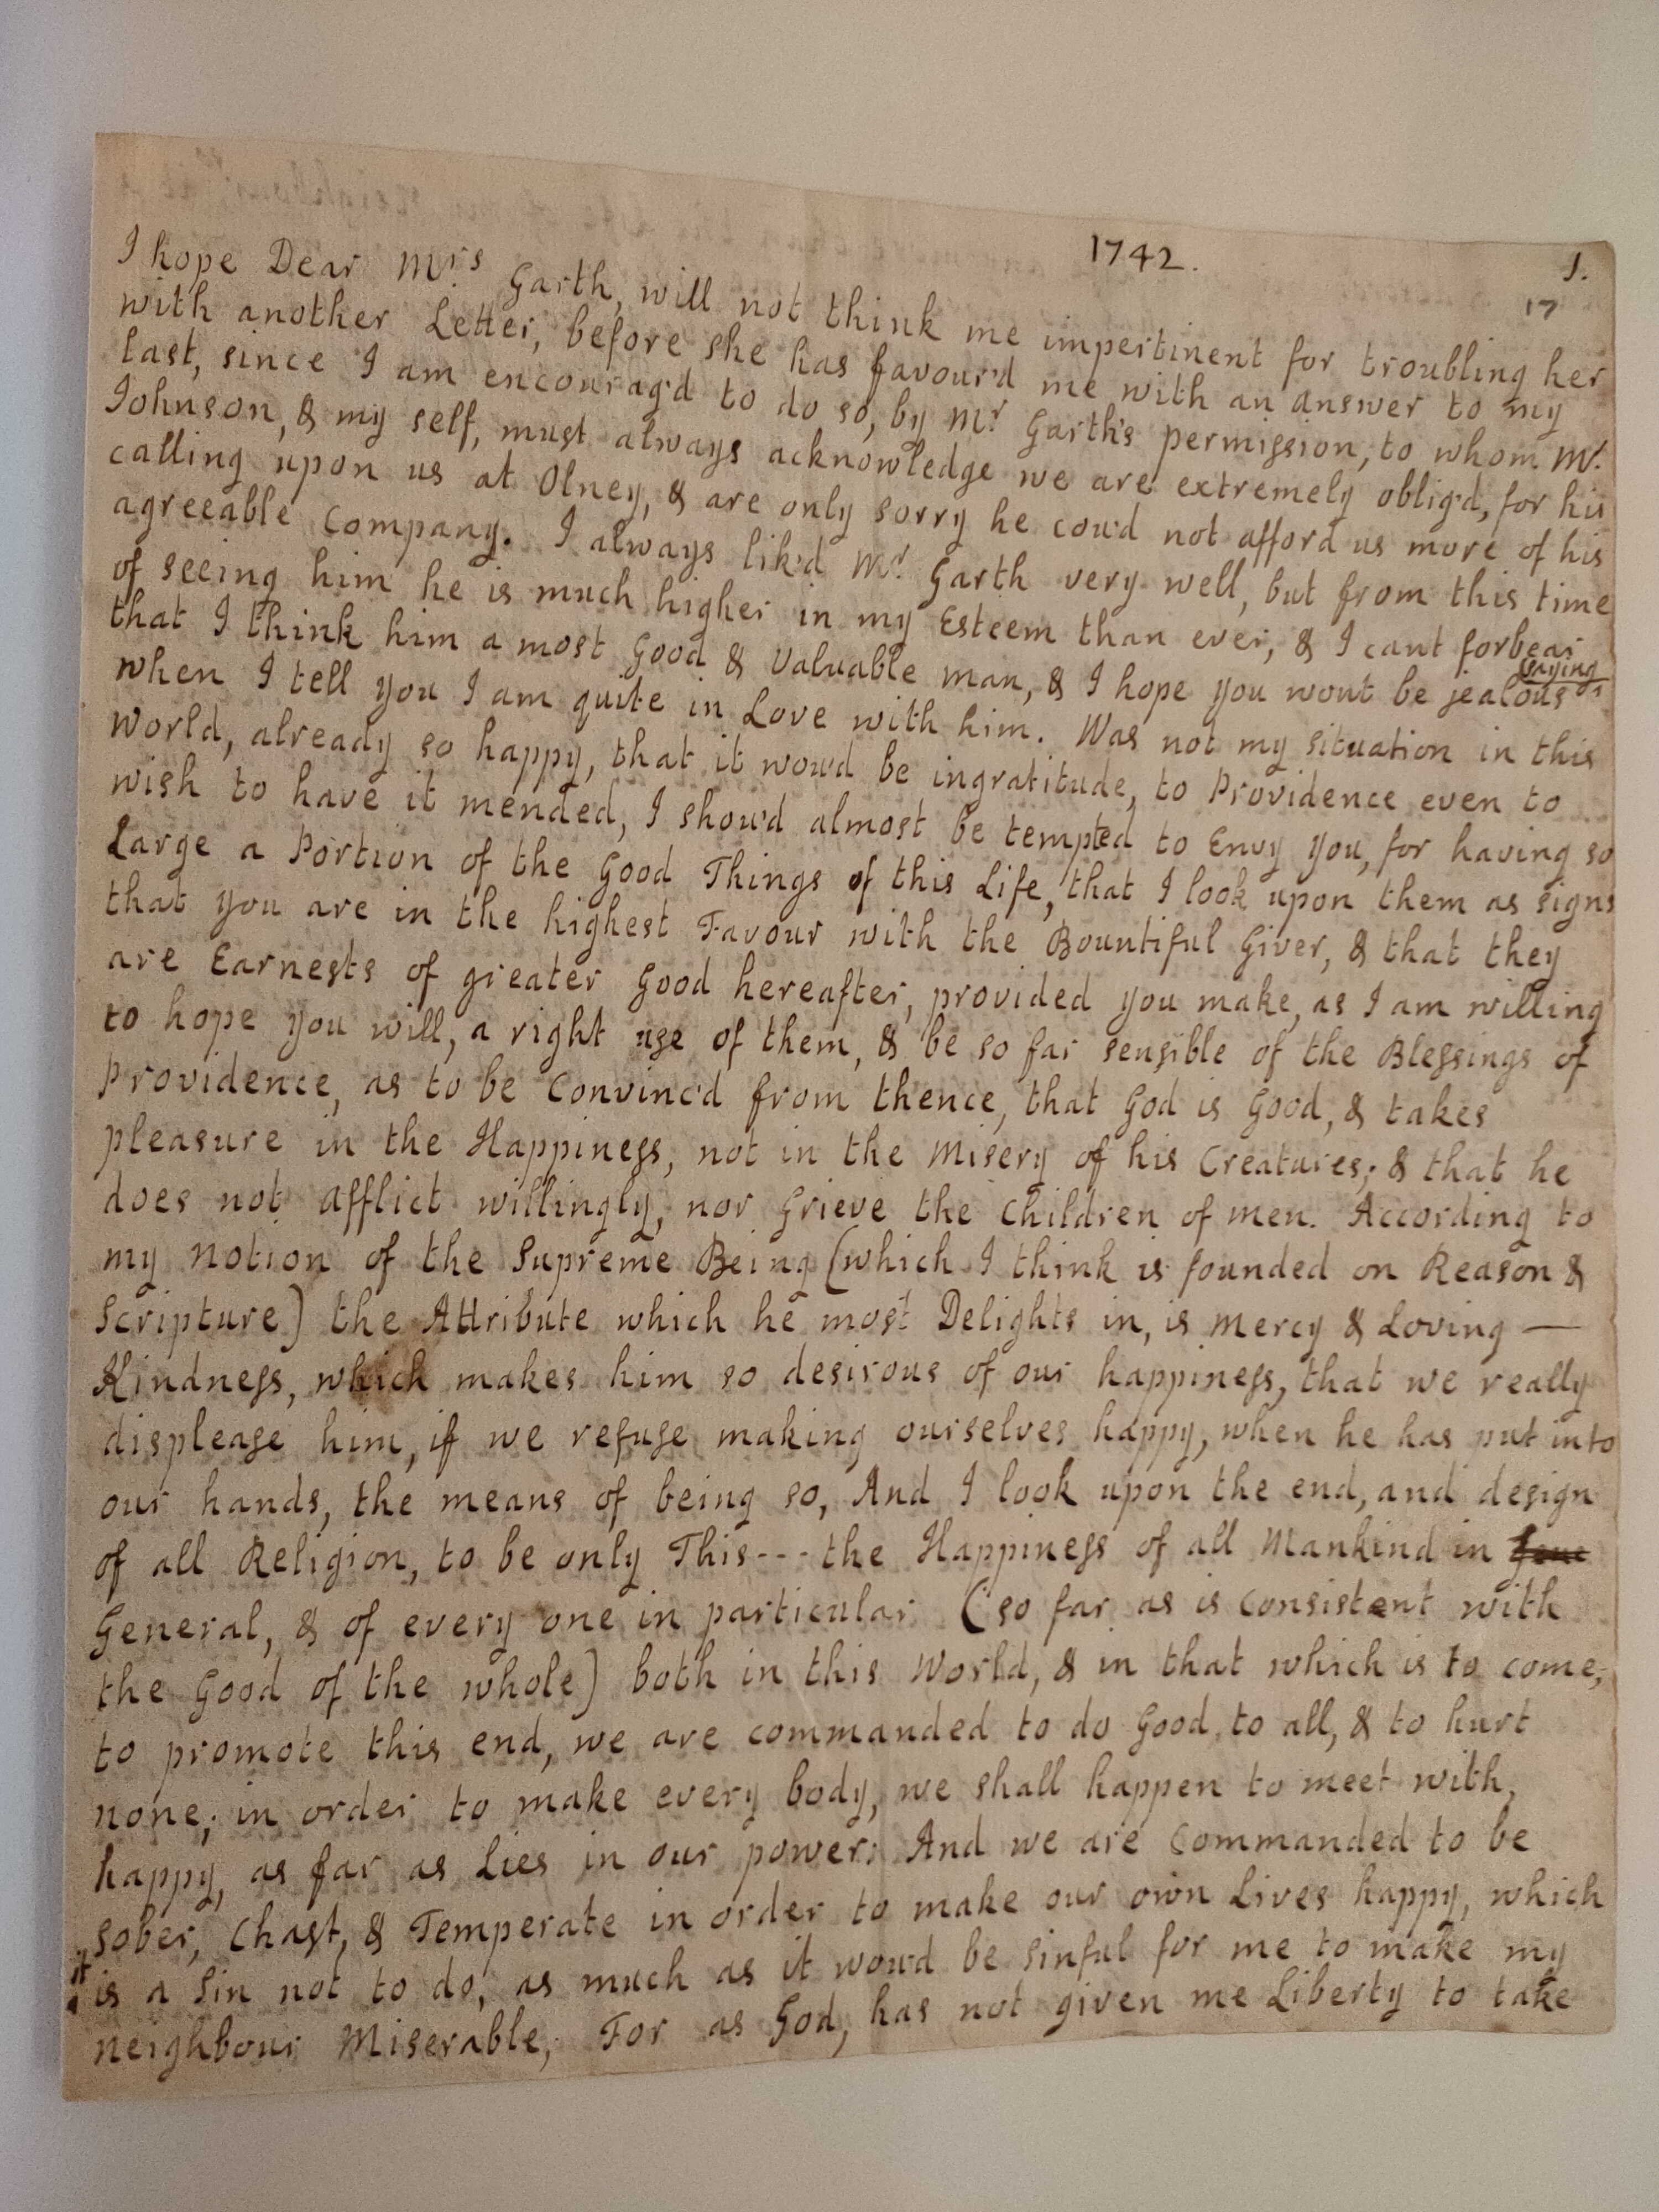 Image #1 of letter: Jane Johnson to Mrs Garth, 3 June 1742